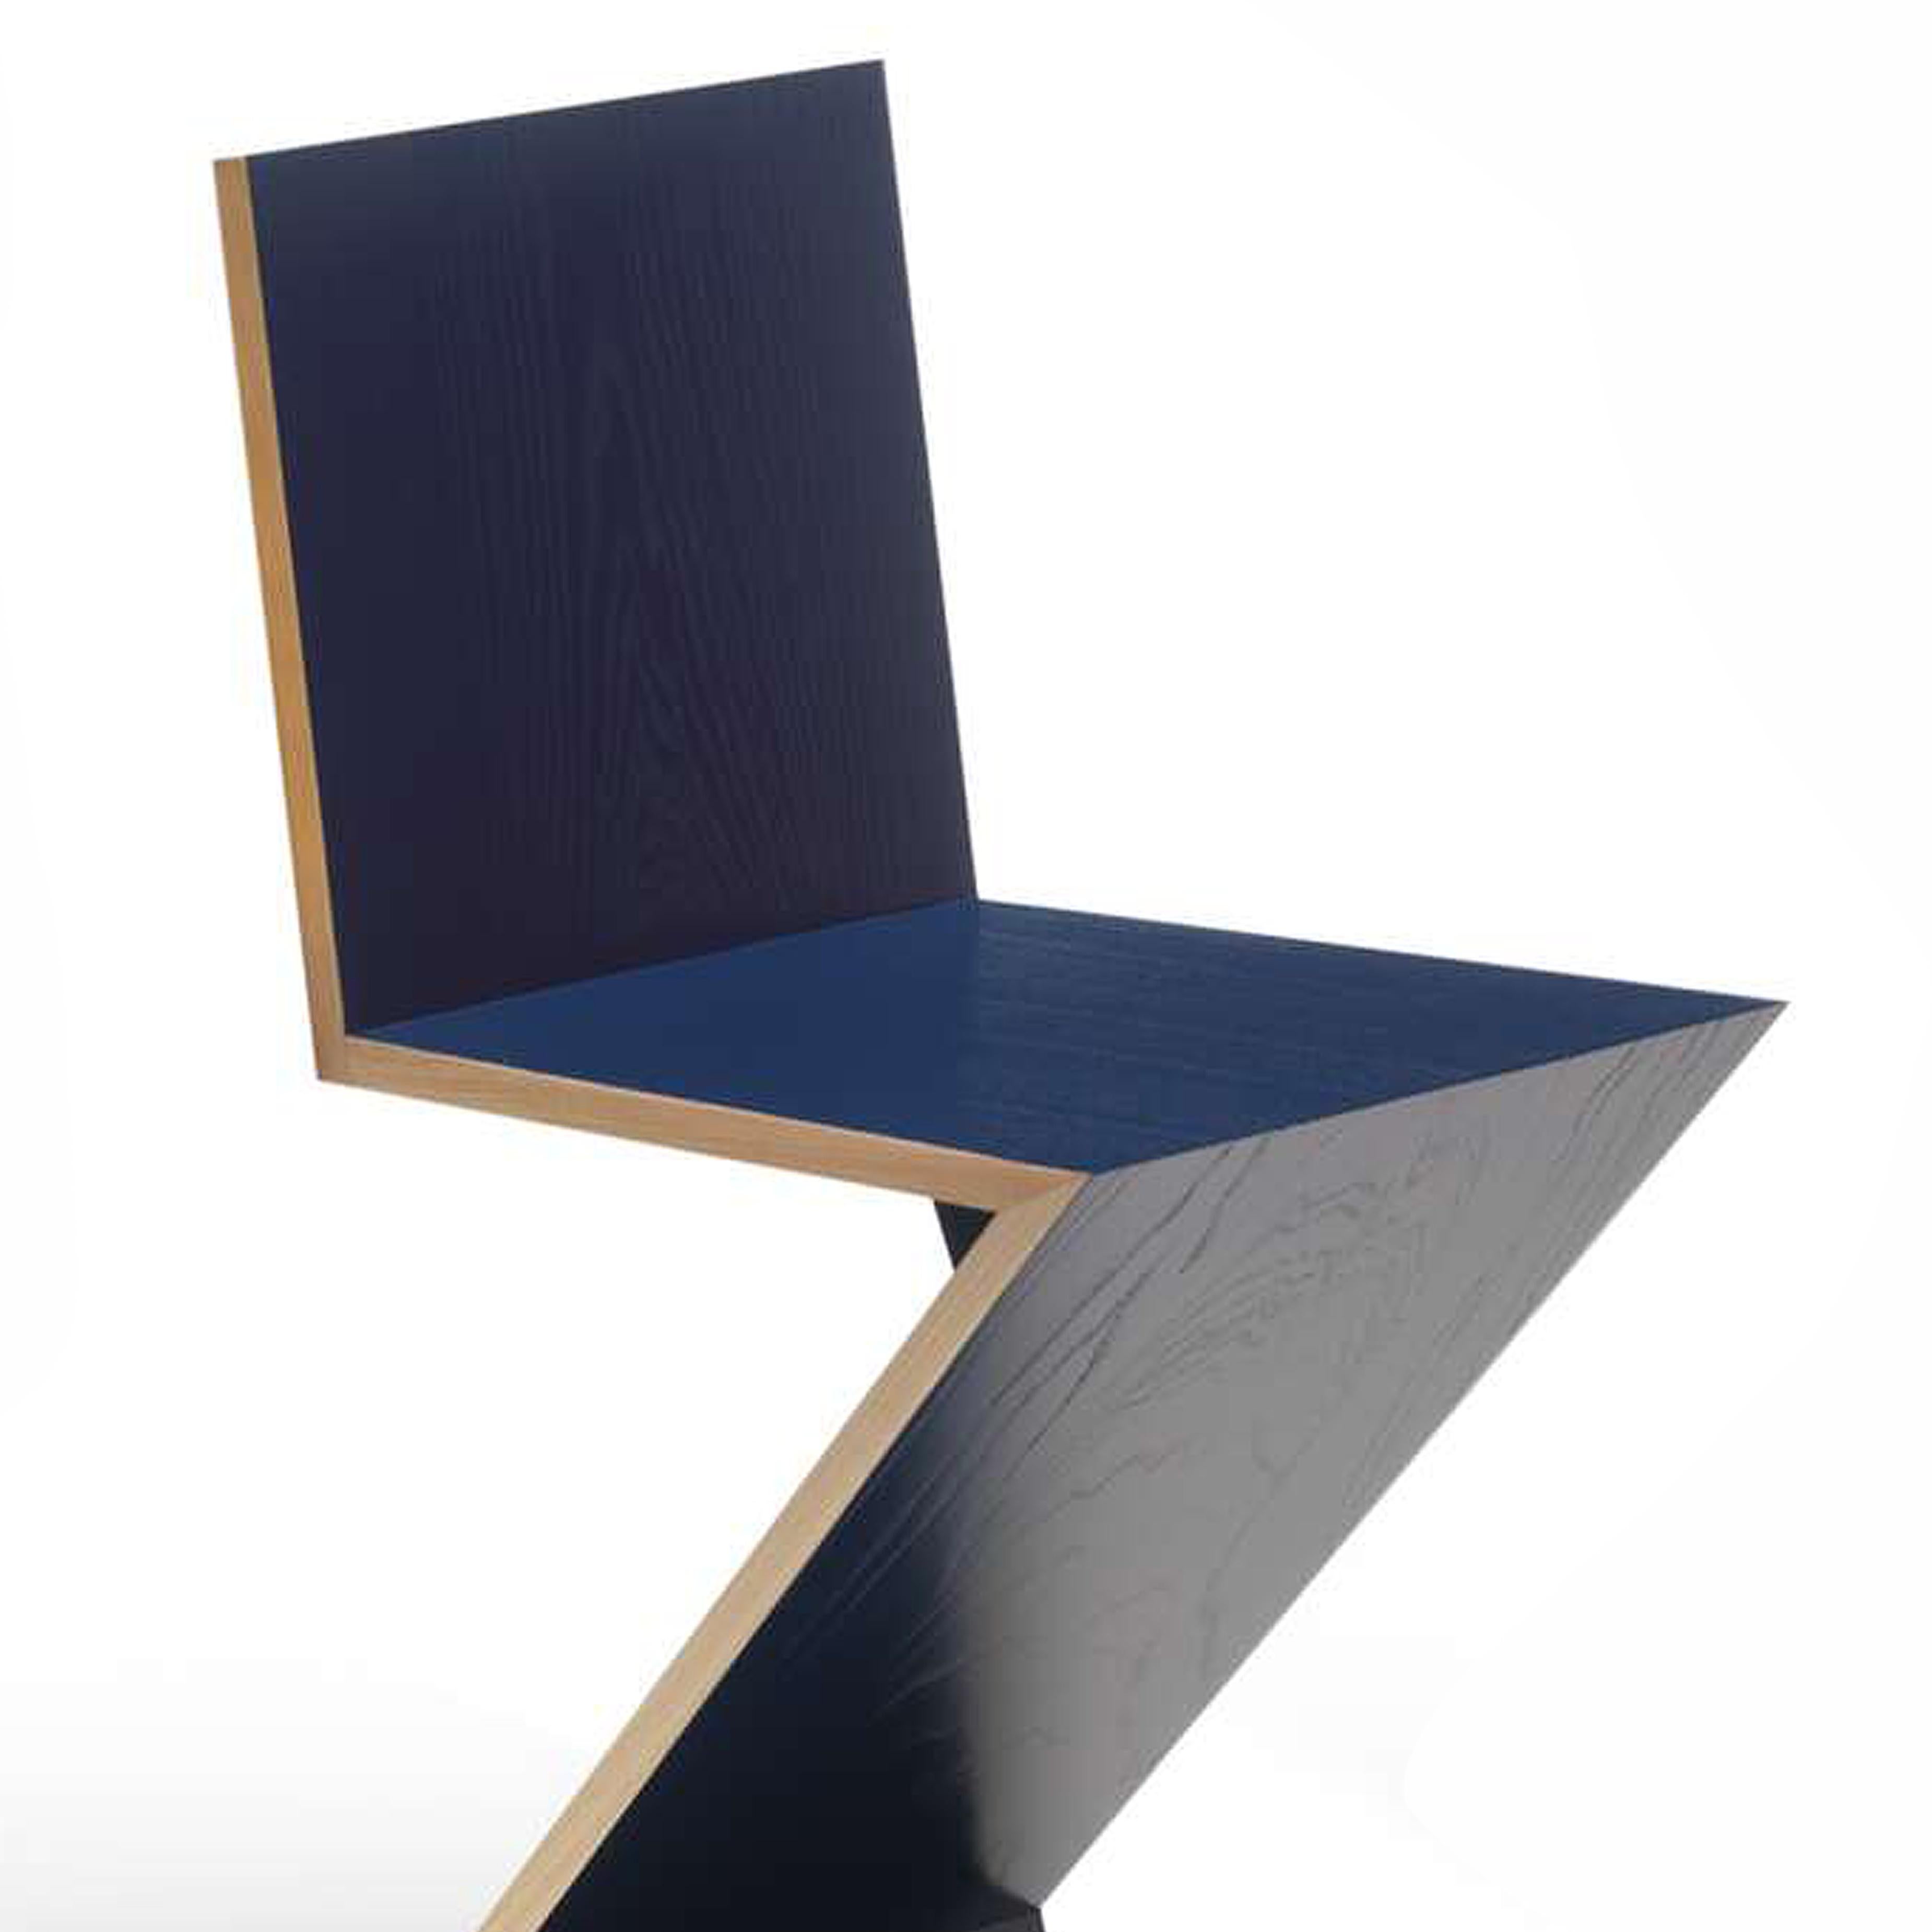 Chaise conçue par Gerrit Thomas Rietveld en 1934. Relancé en 1973/ 2011.
Fabriqué par Cassina en Italie.

Conçue par Gerrit Rietveld, cette chaise est un des premiers exemples de siège en porte-à-faux. Elle est composée de quatre planches de bois